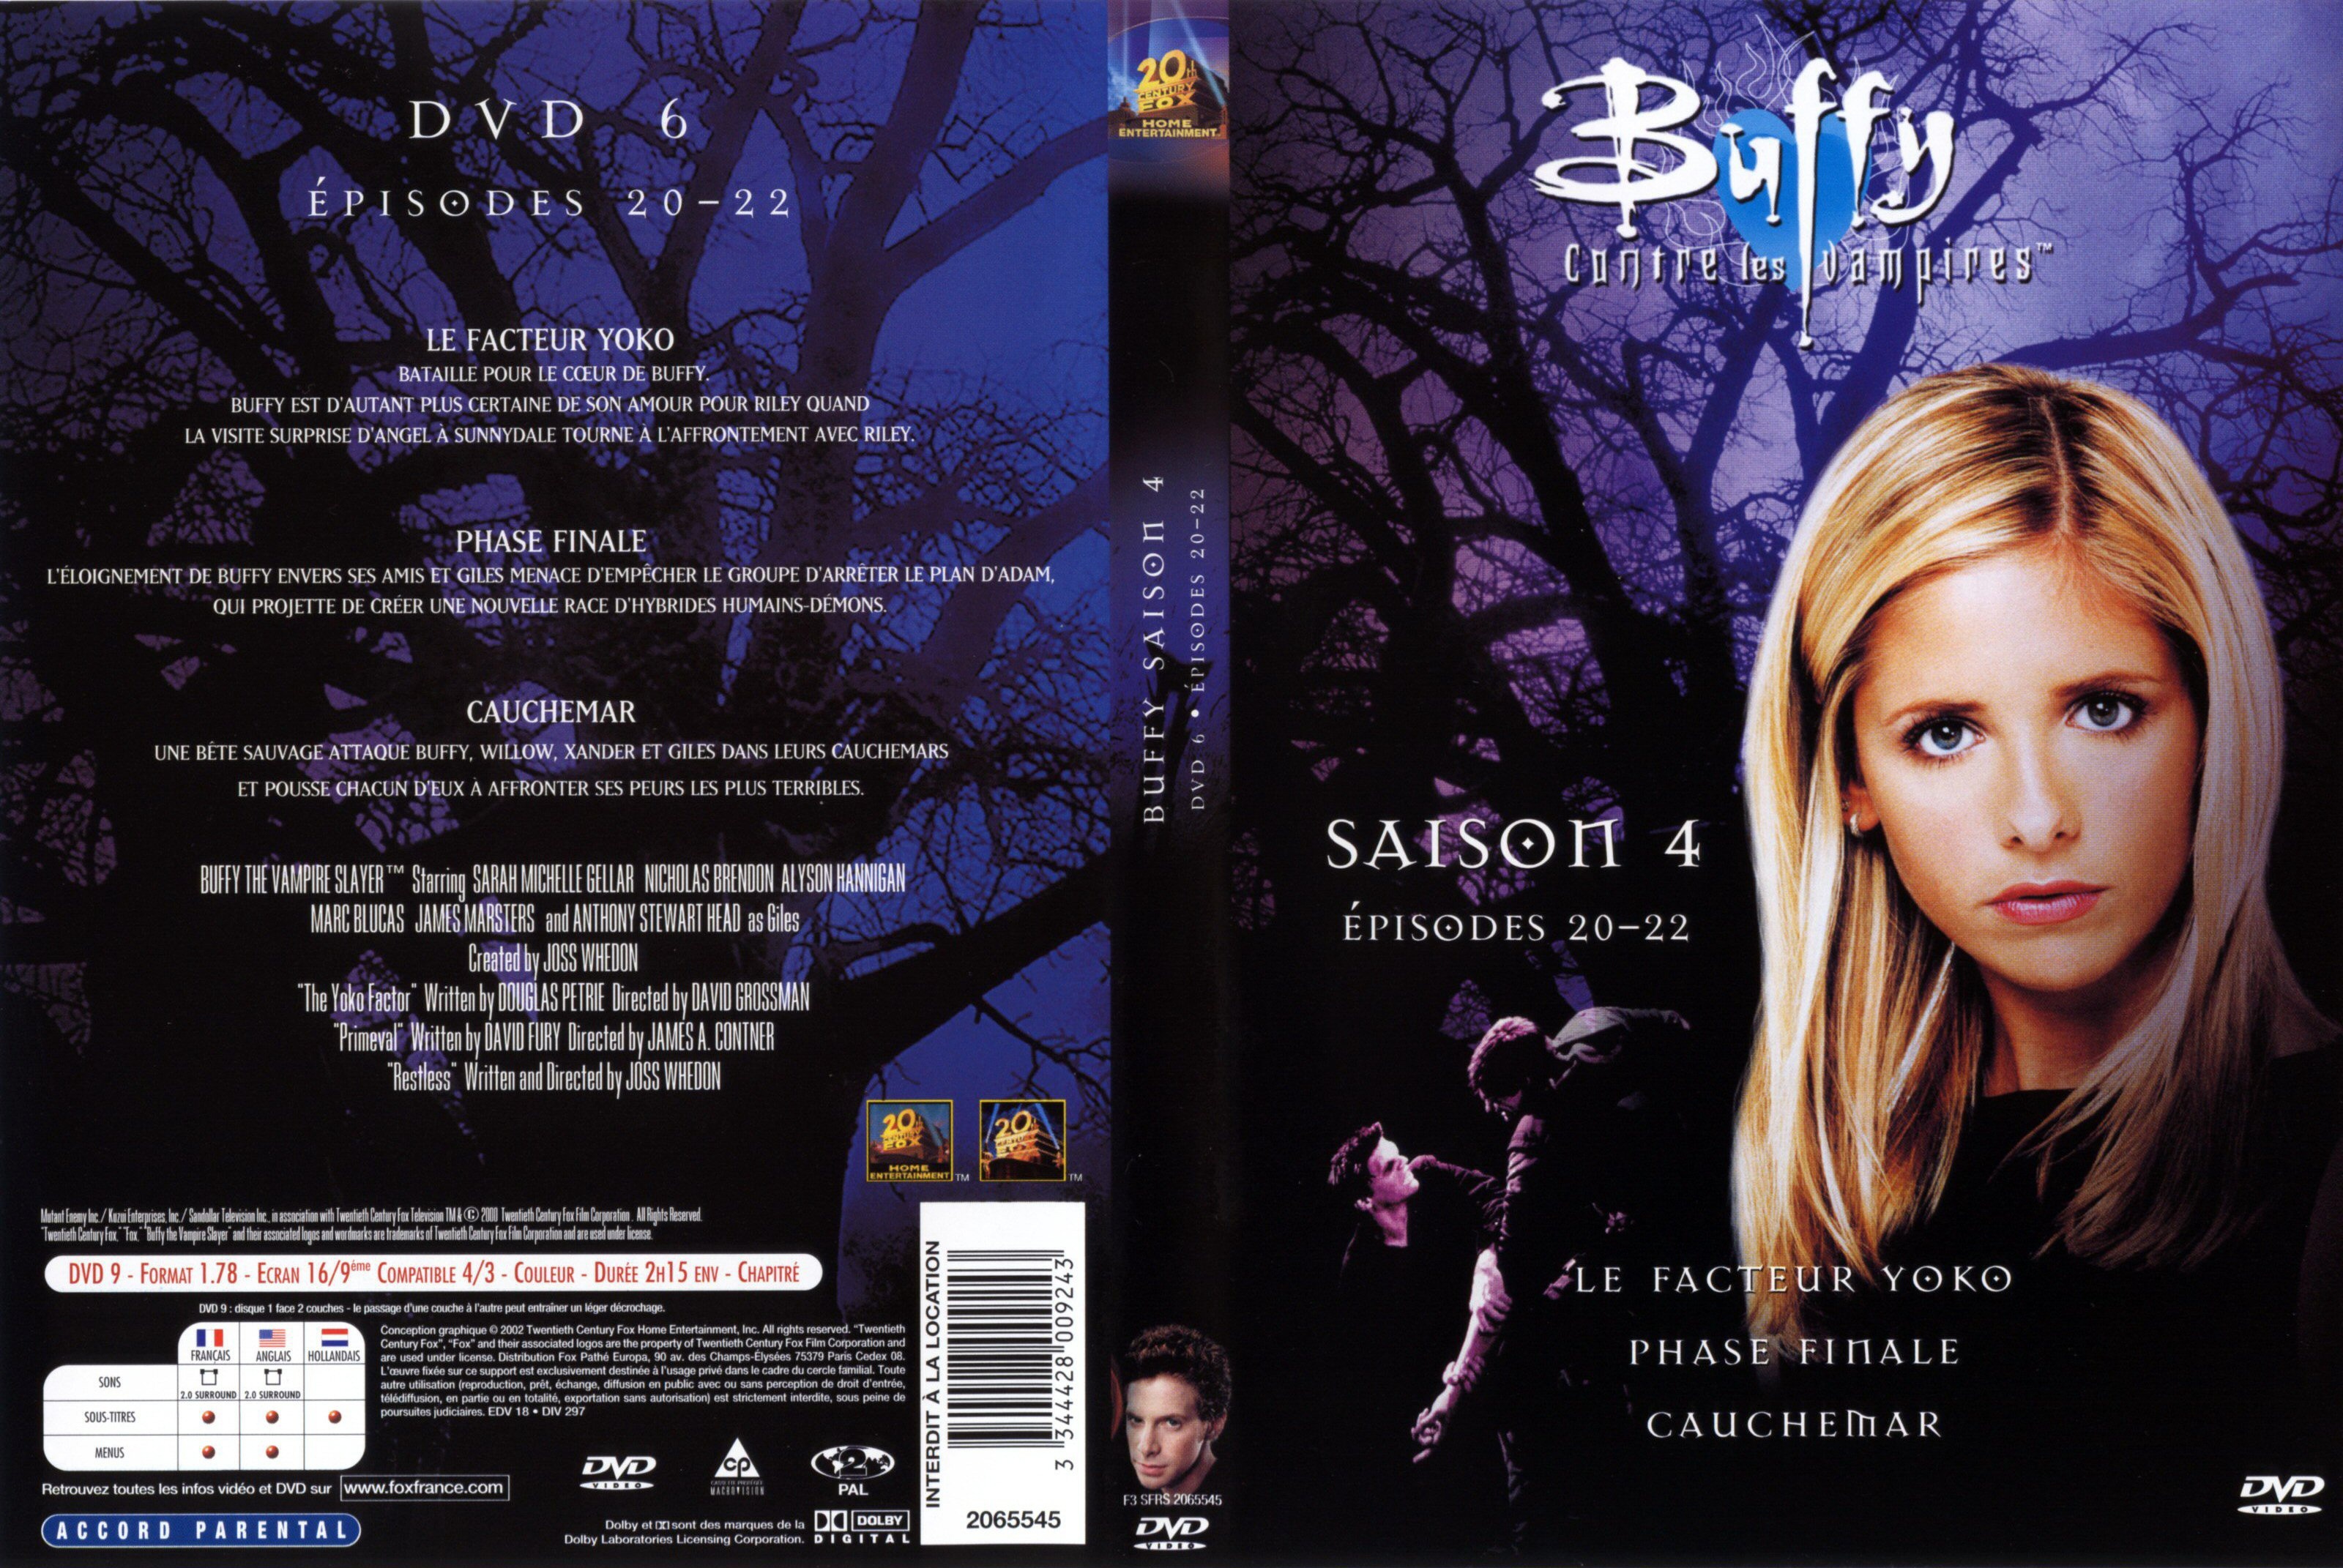 Jaquette DVD Buffy contre les vampires Saison 4 DVD 6